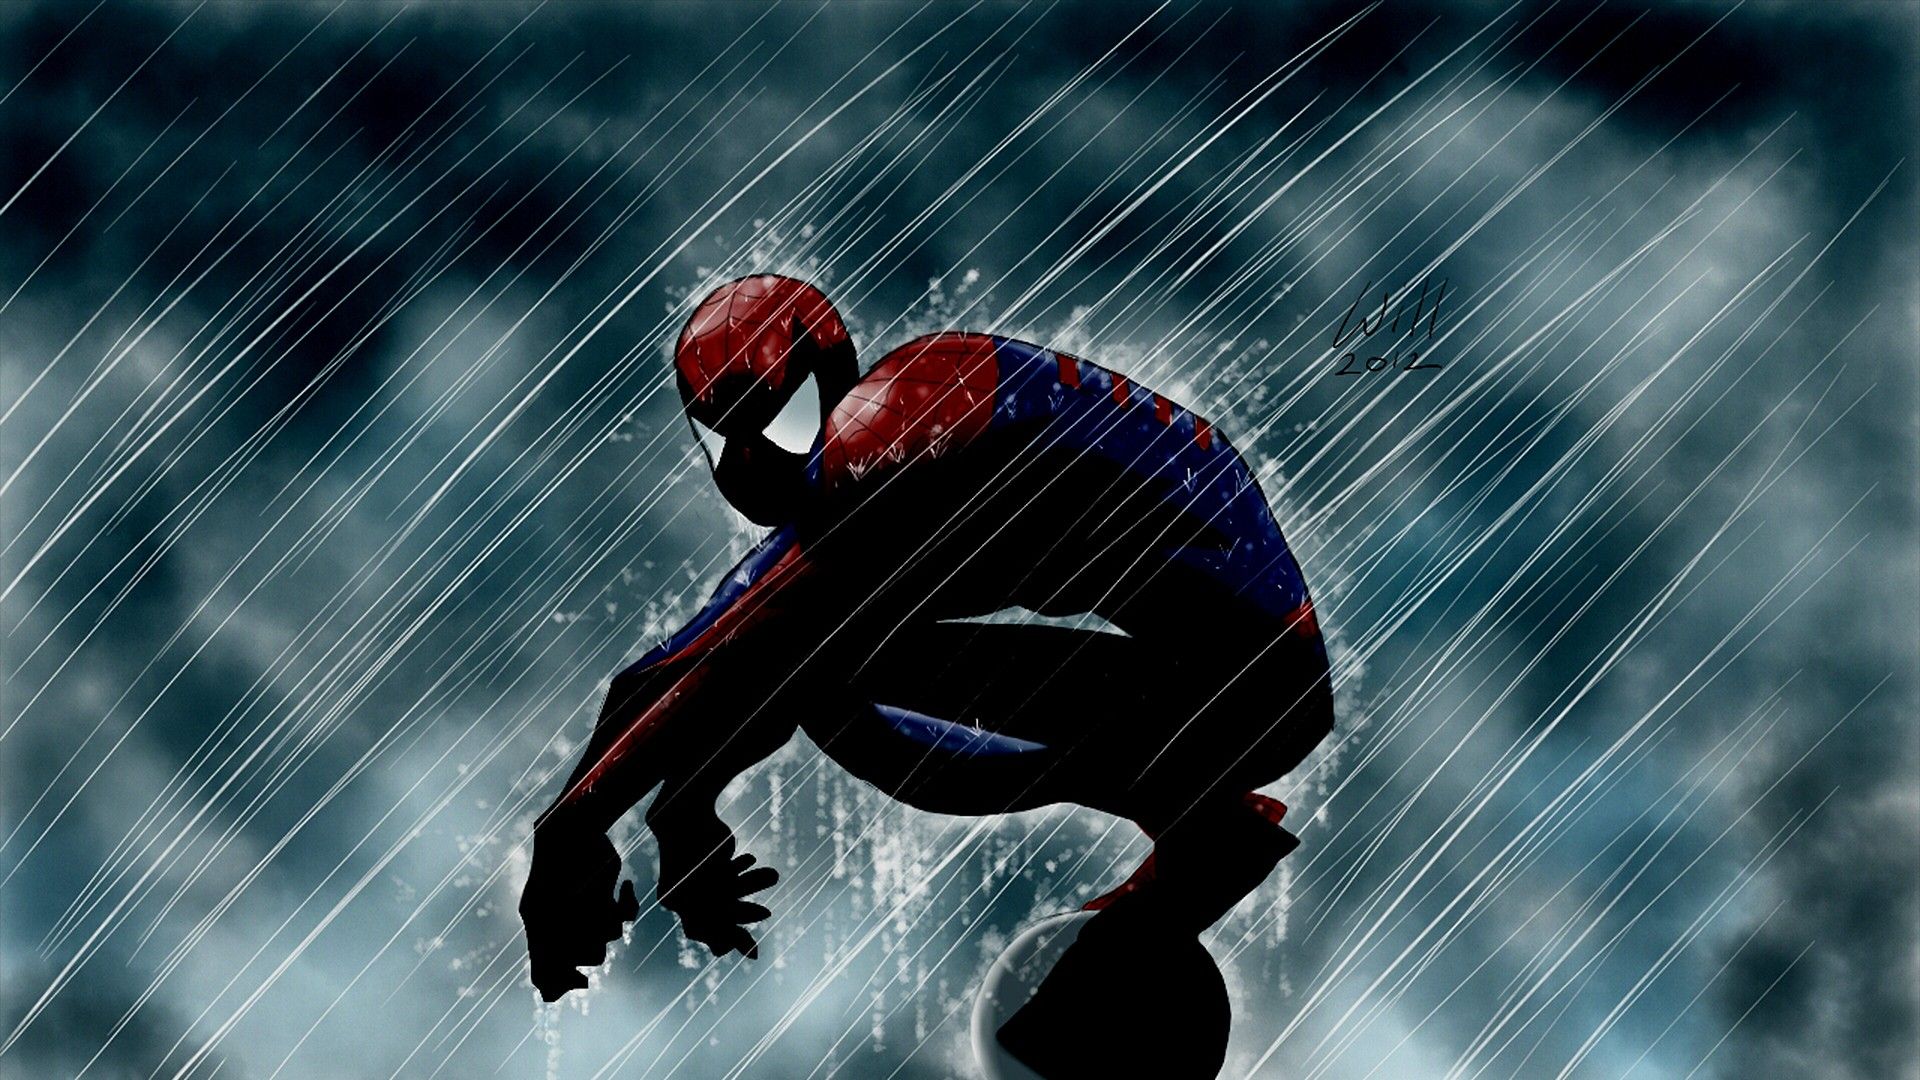 46+] Spiderman Comic Wallpaper - WallpaperSafari